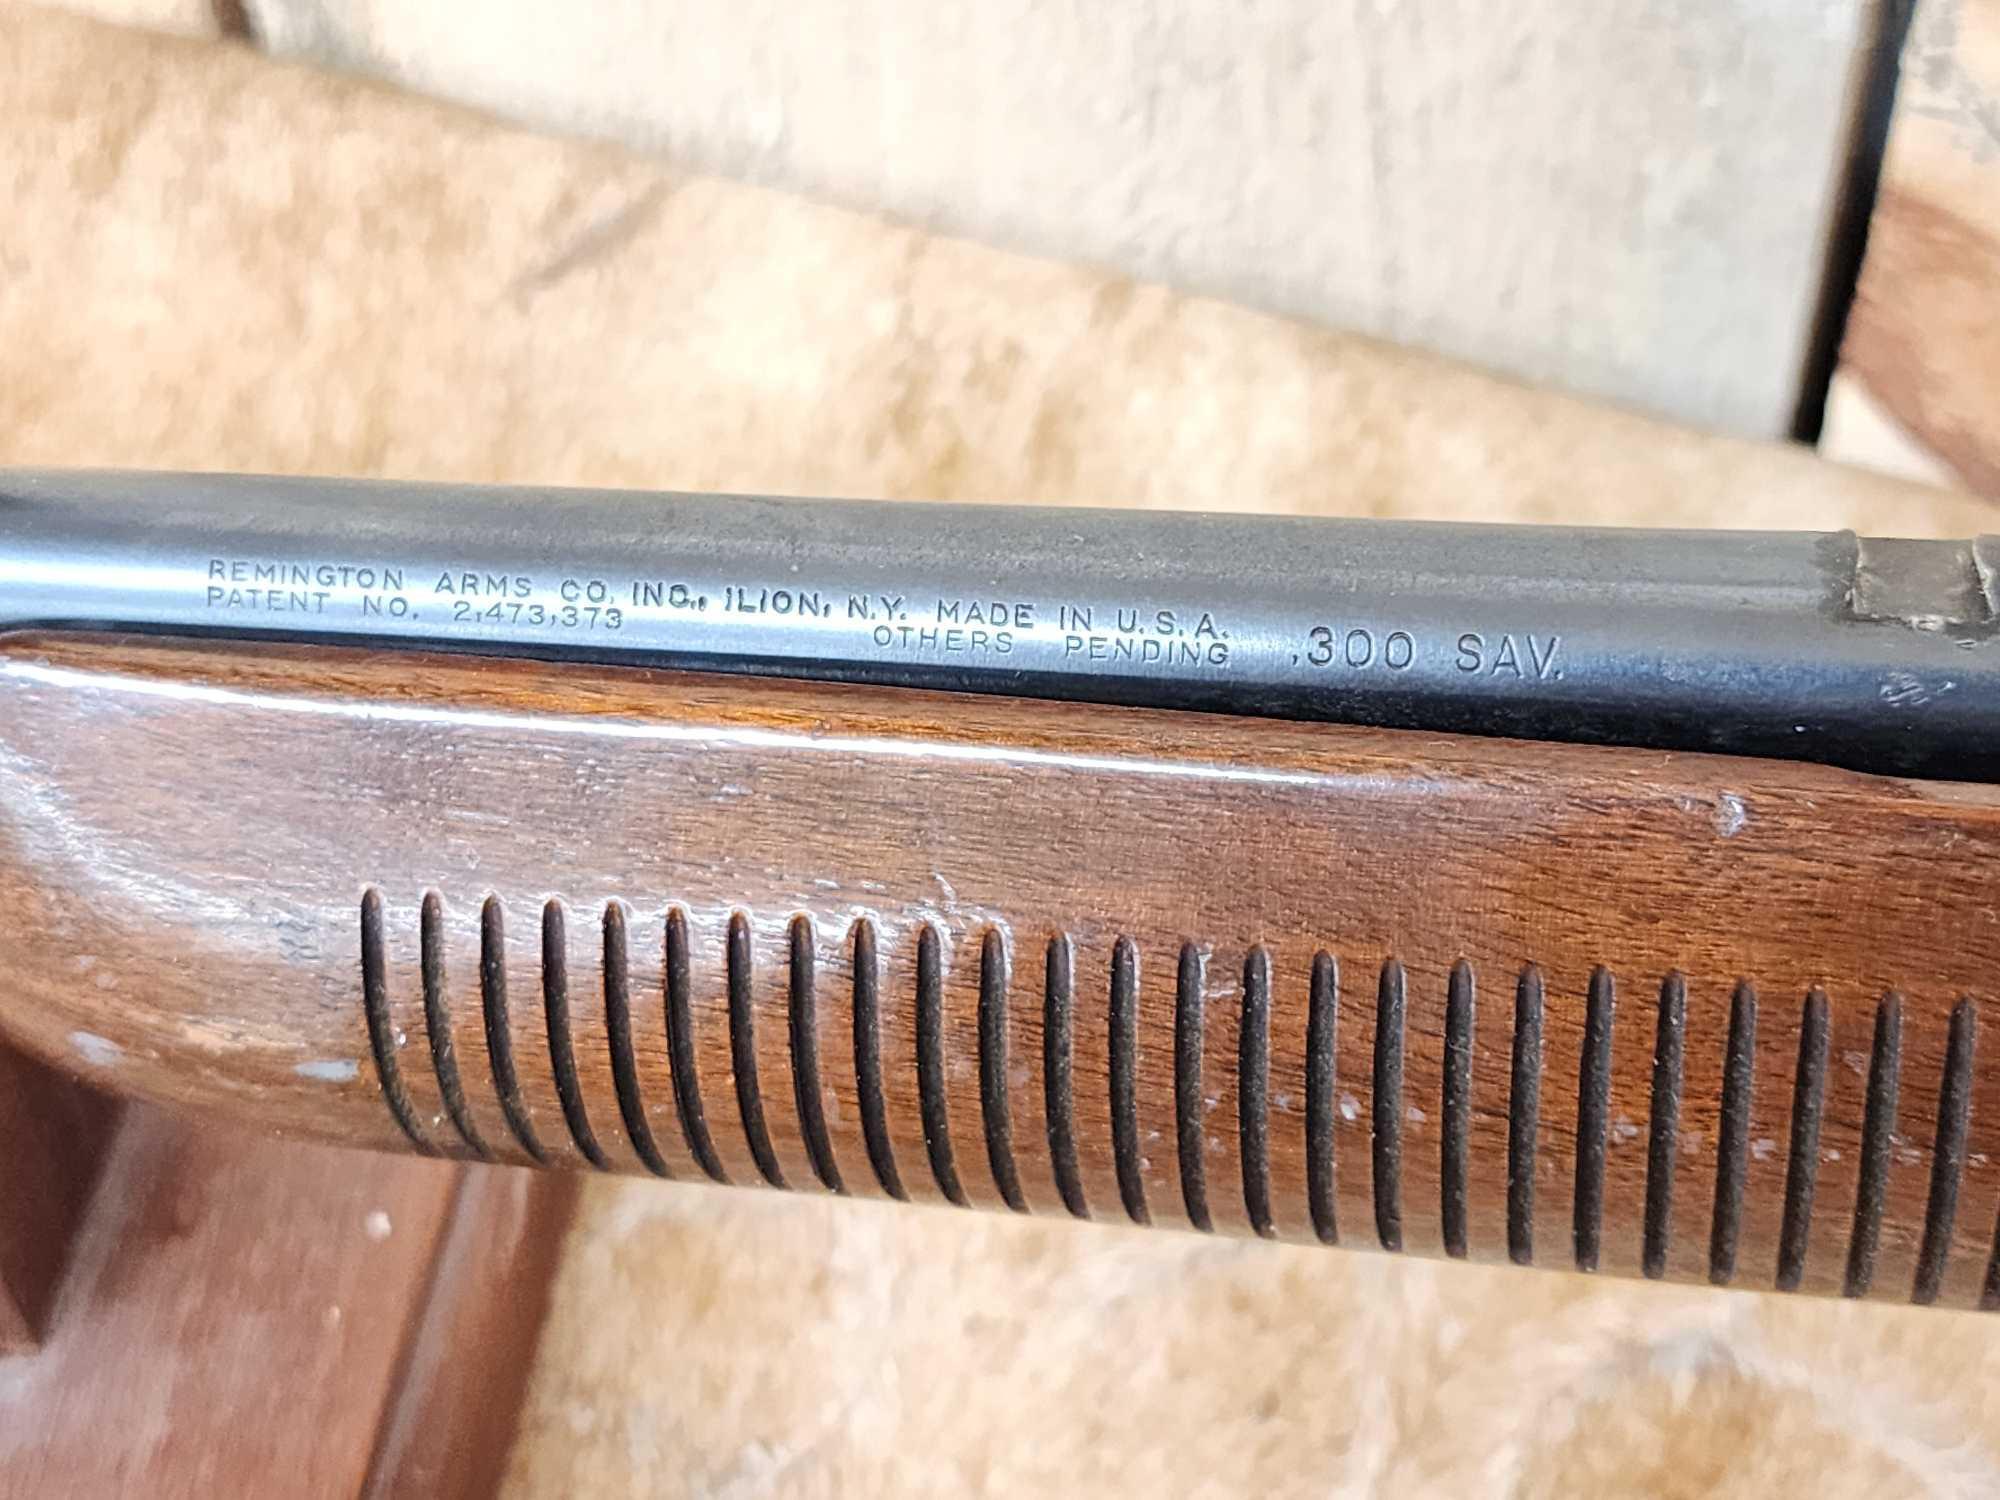 Remington Gamemaster Model 760 .300 Savage Pump Action Rifle